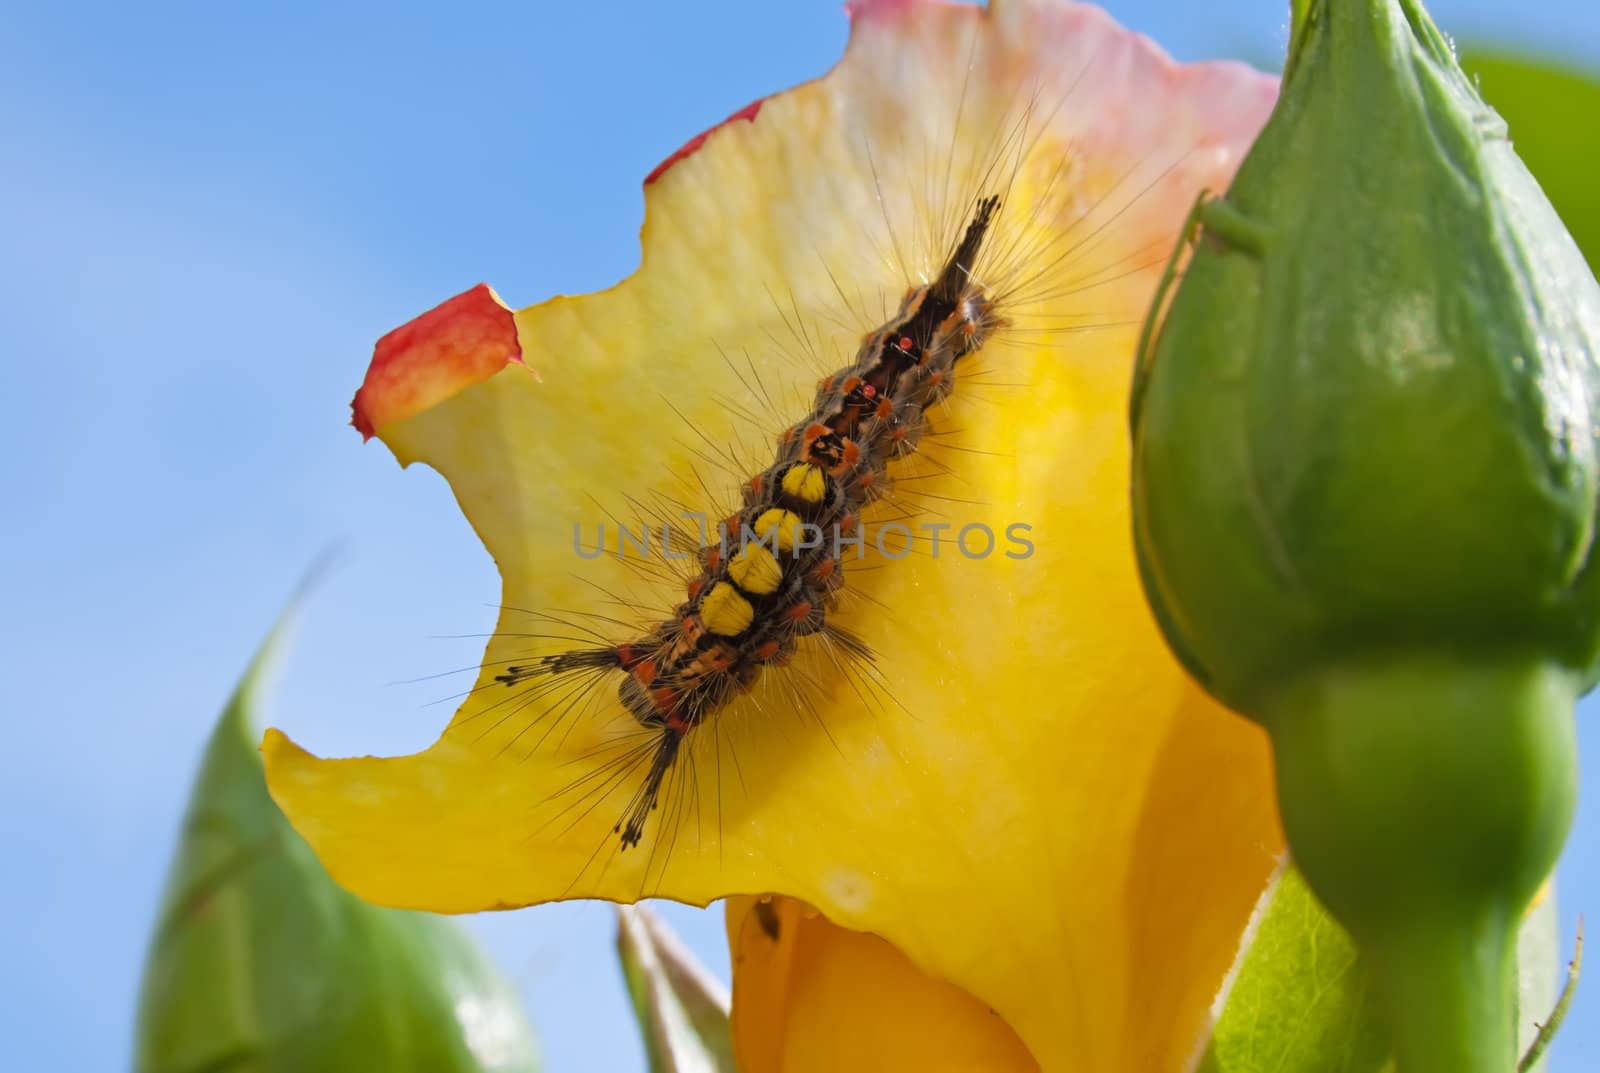 Caterpillar by Ragnar